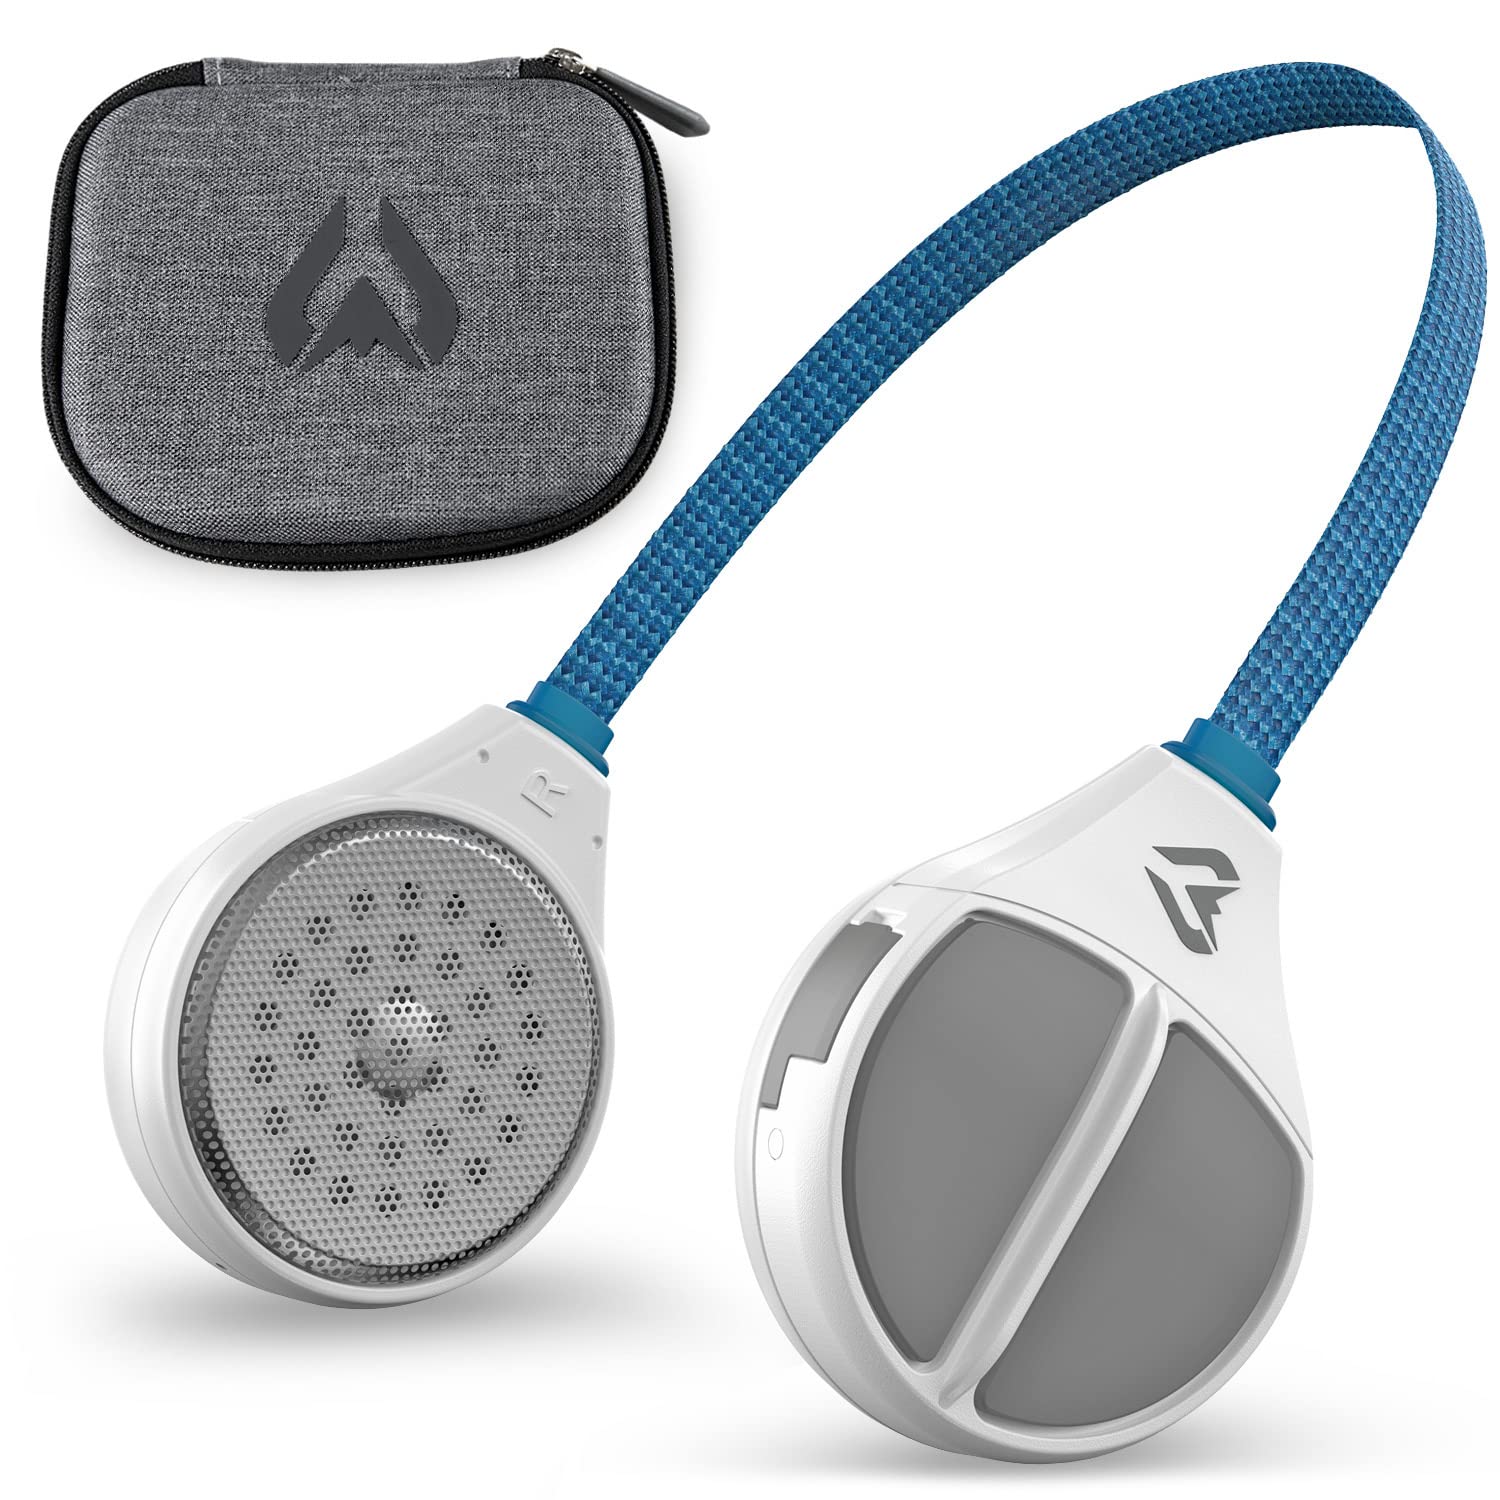 Wildhorn Alta 无线蓝牙、插入式耳机 - 高清扬声器兼容任何音频就绪滑雪/滑雪板头盔耳机。戴手套即可控制，麦克风可实现免提通话